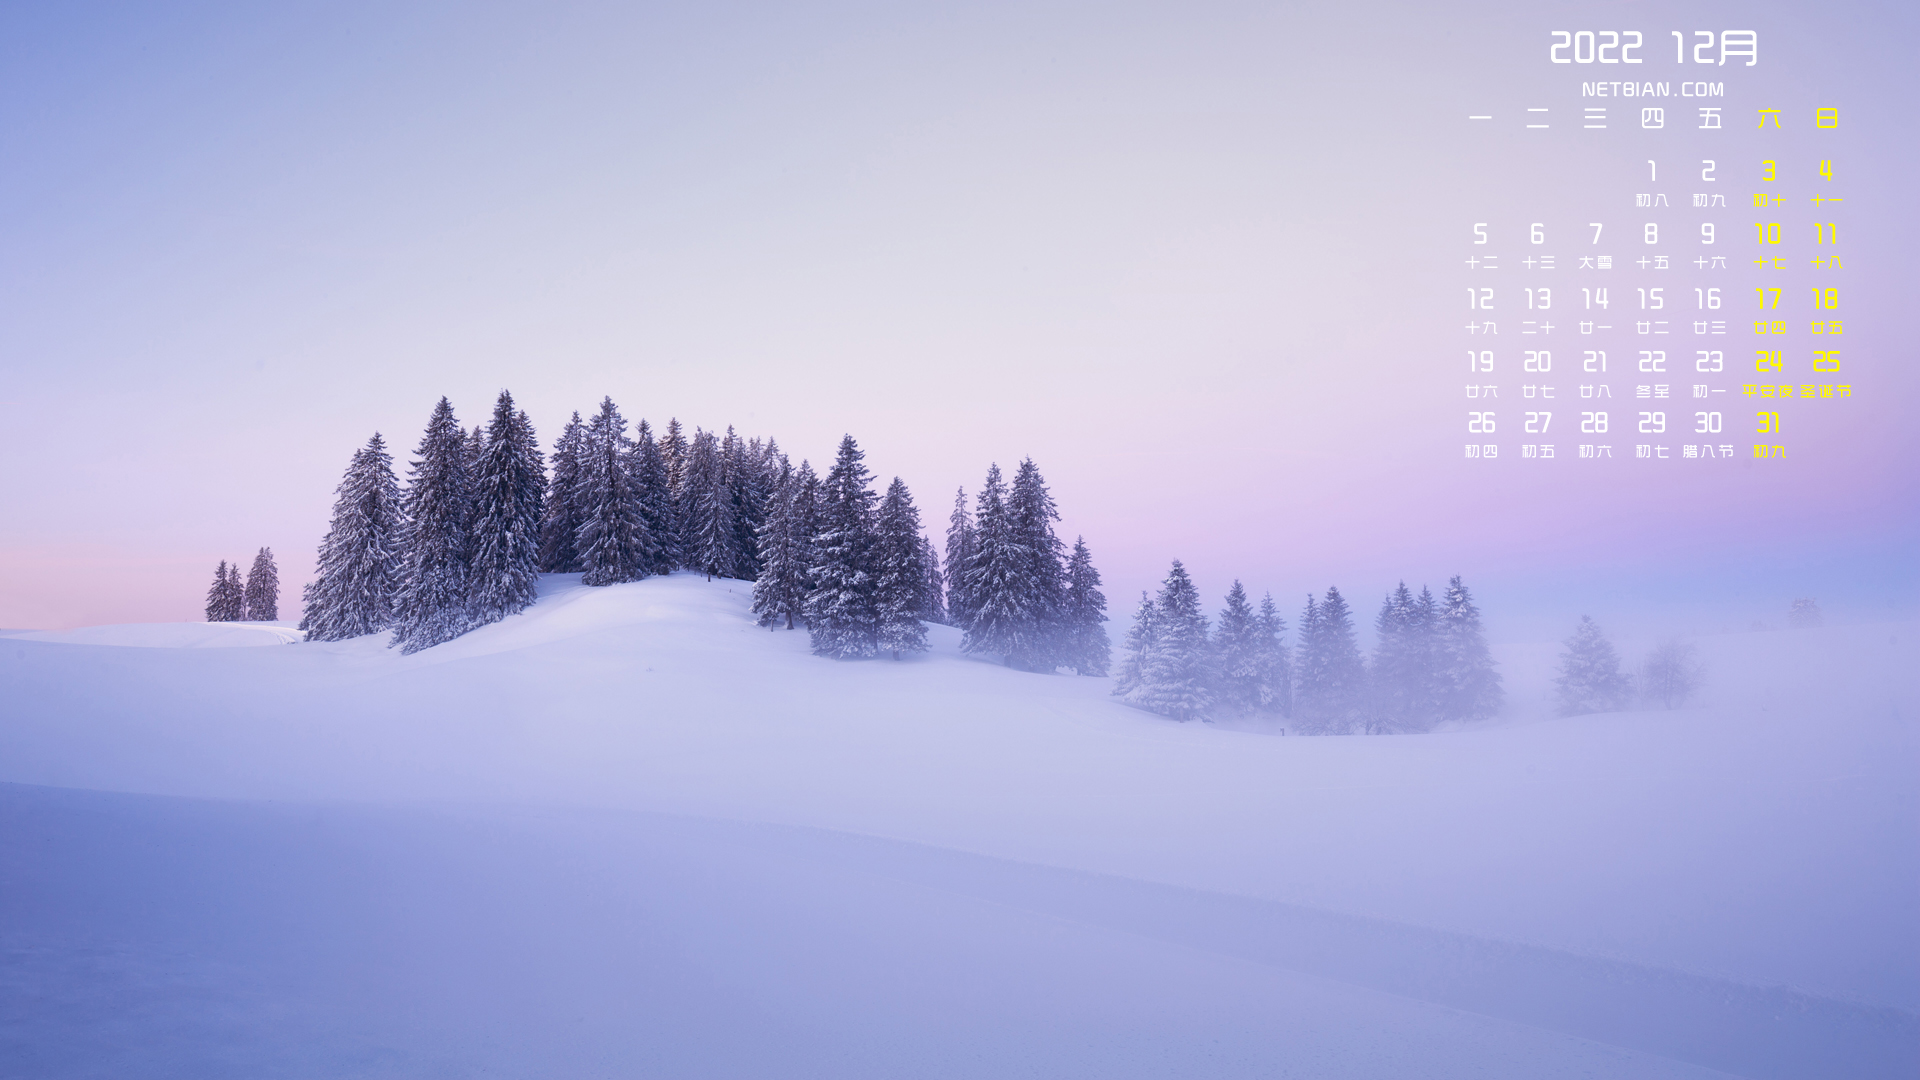 美丽冬天雪景 2022年12月日历图片 桌面 壁纸